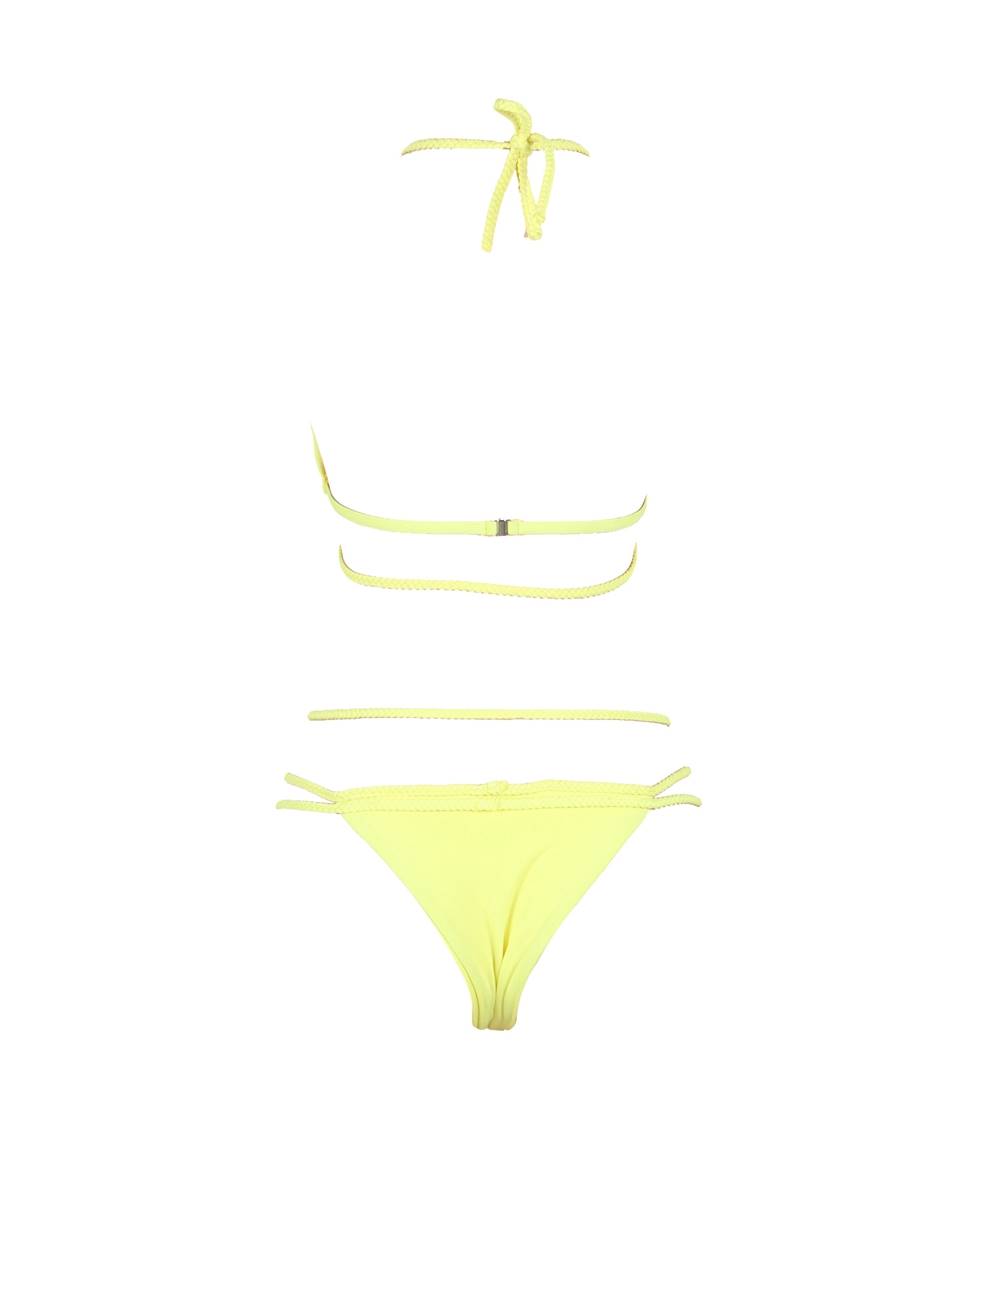 Adult Stylish Sexy Summer Women Yellow Braided Bikini Set